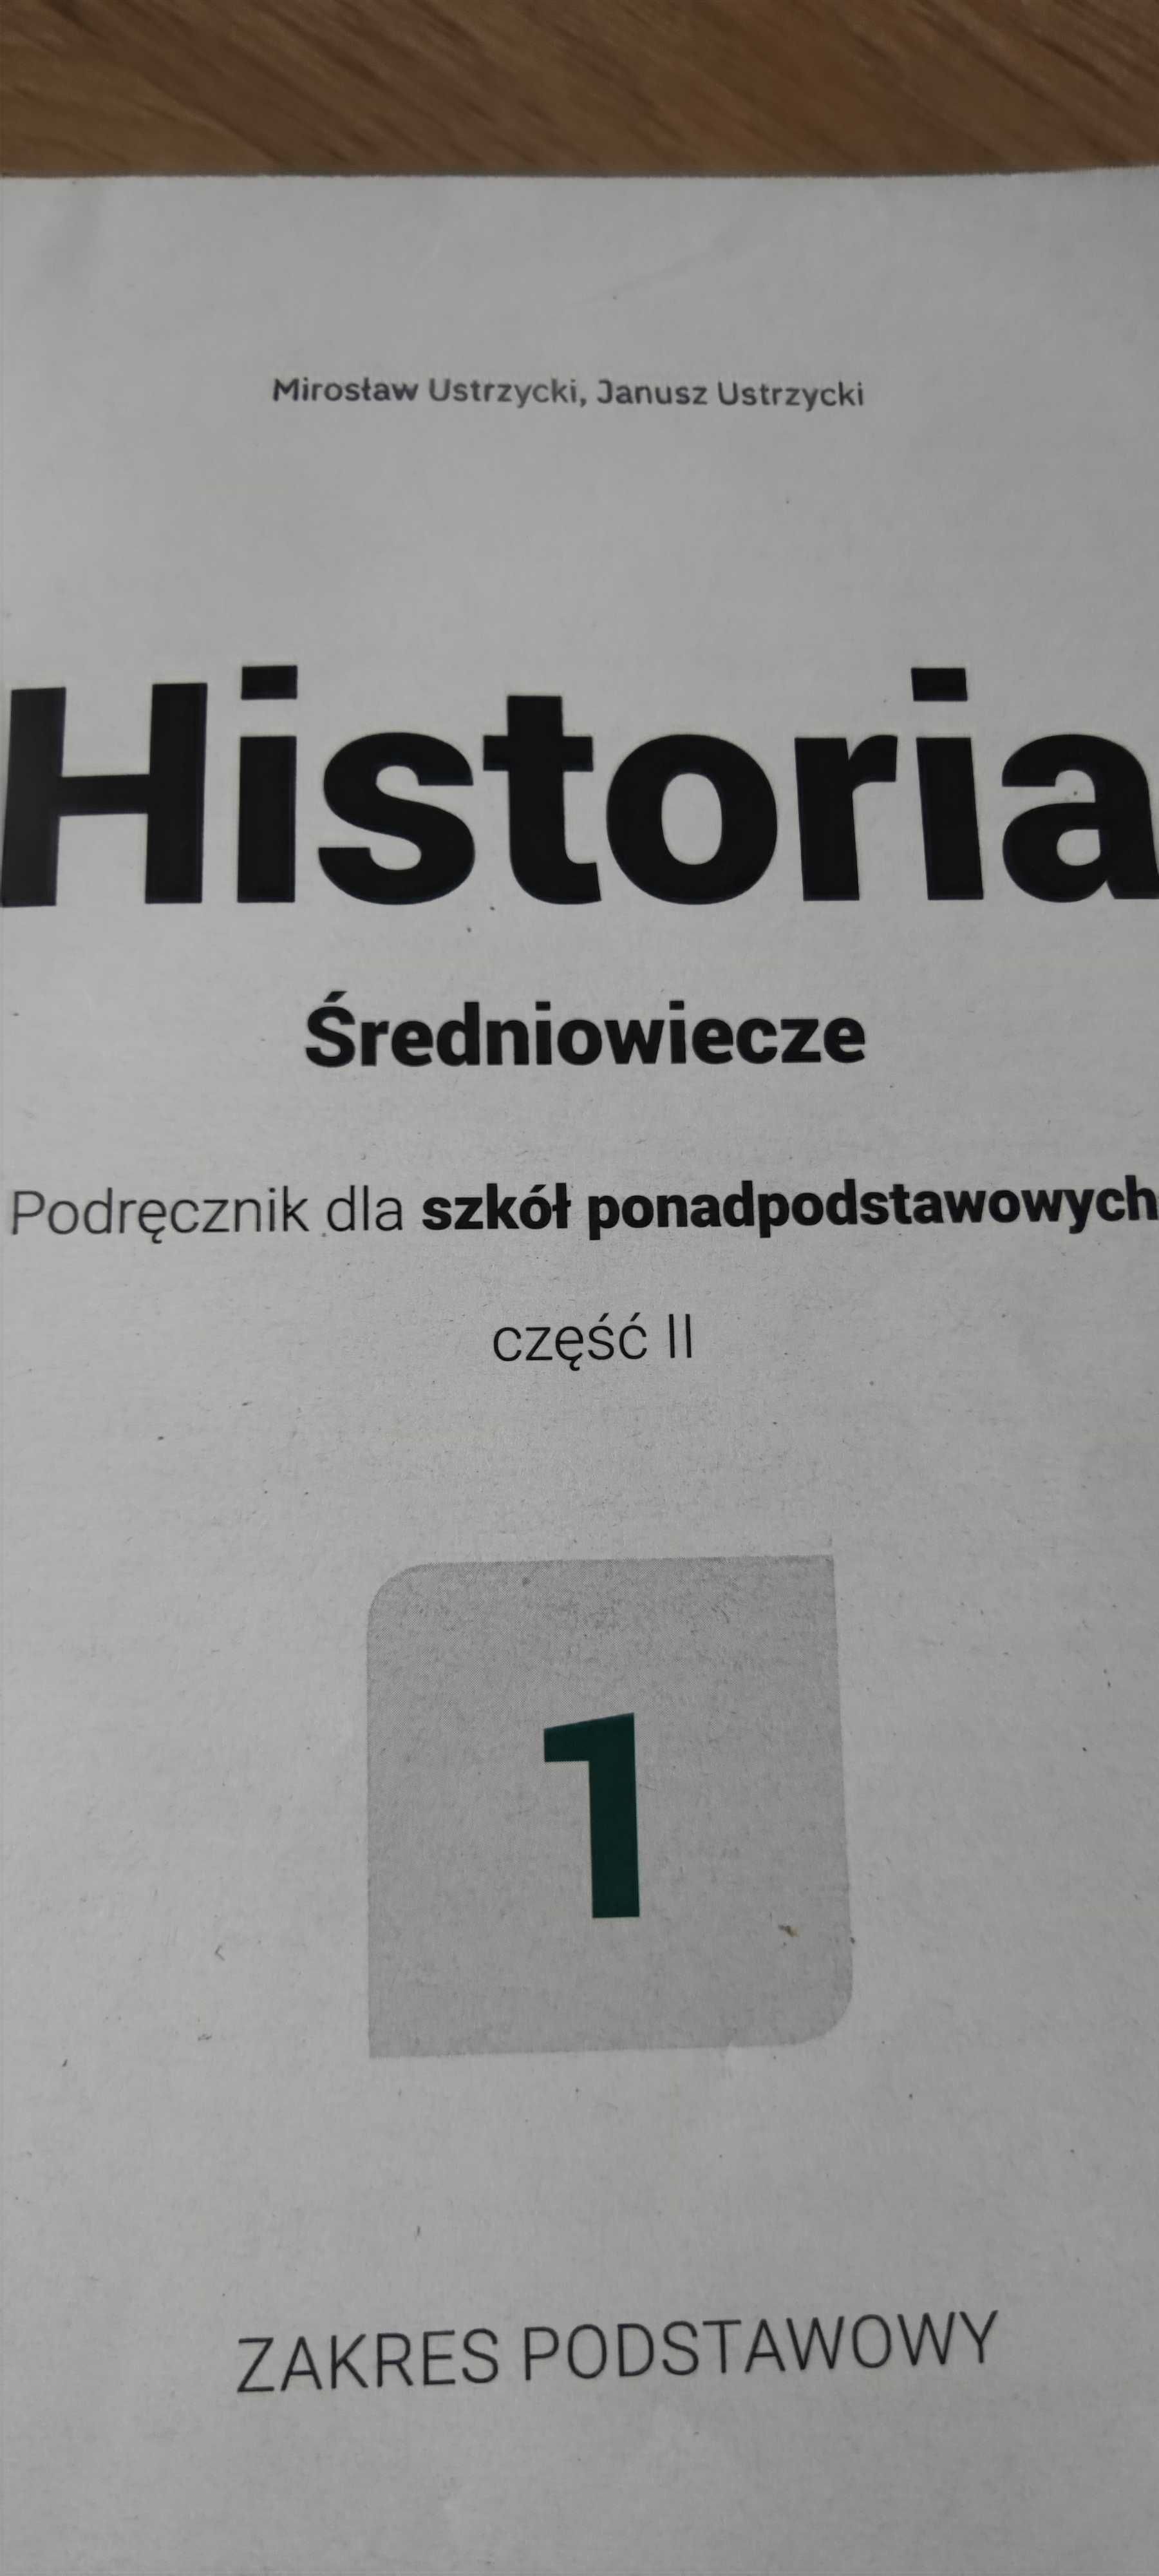 Podrecznik Historia cz.2